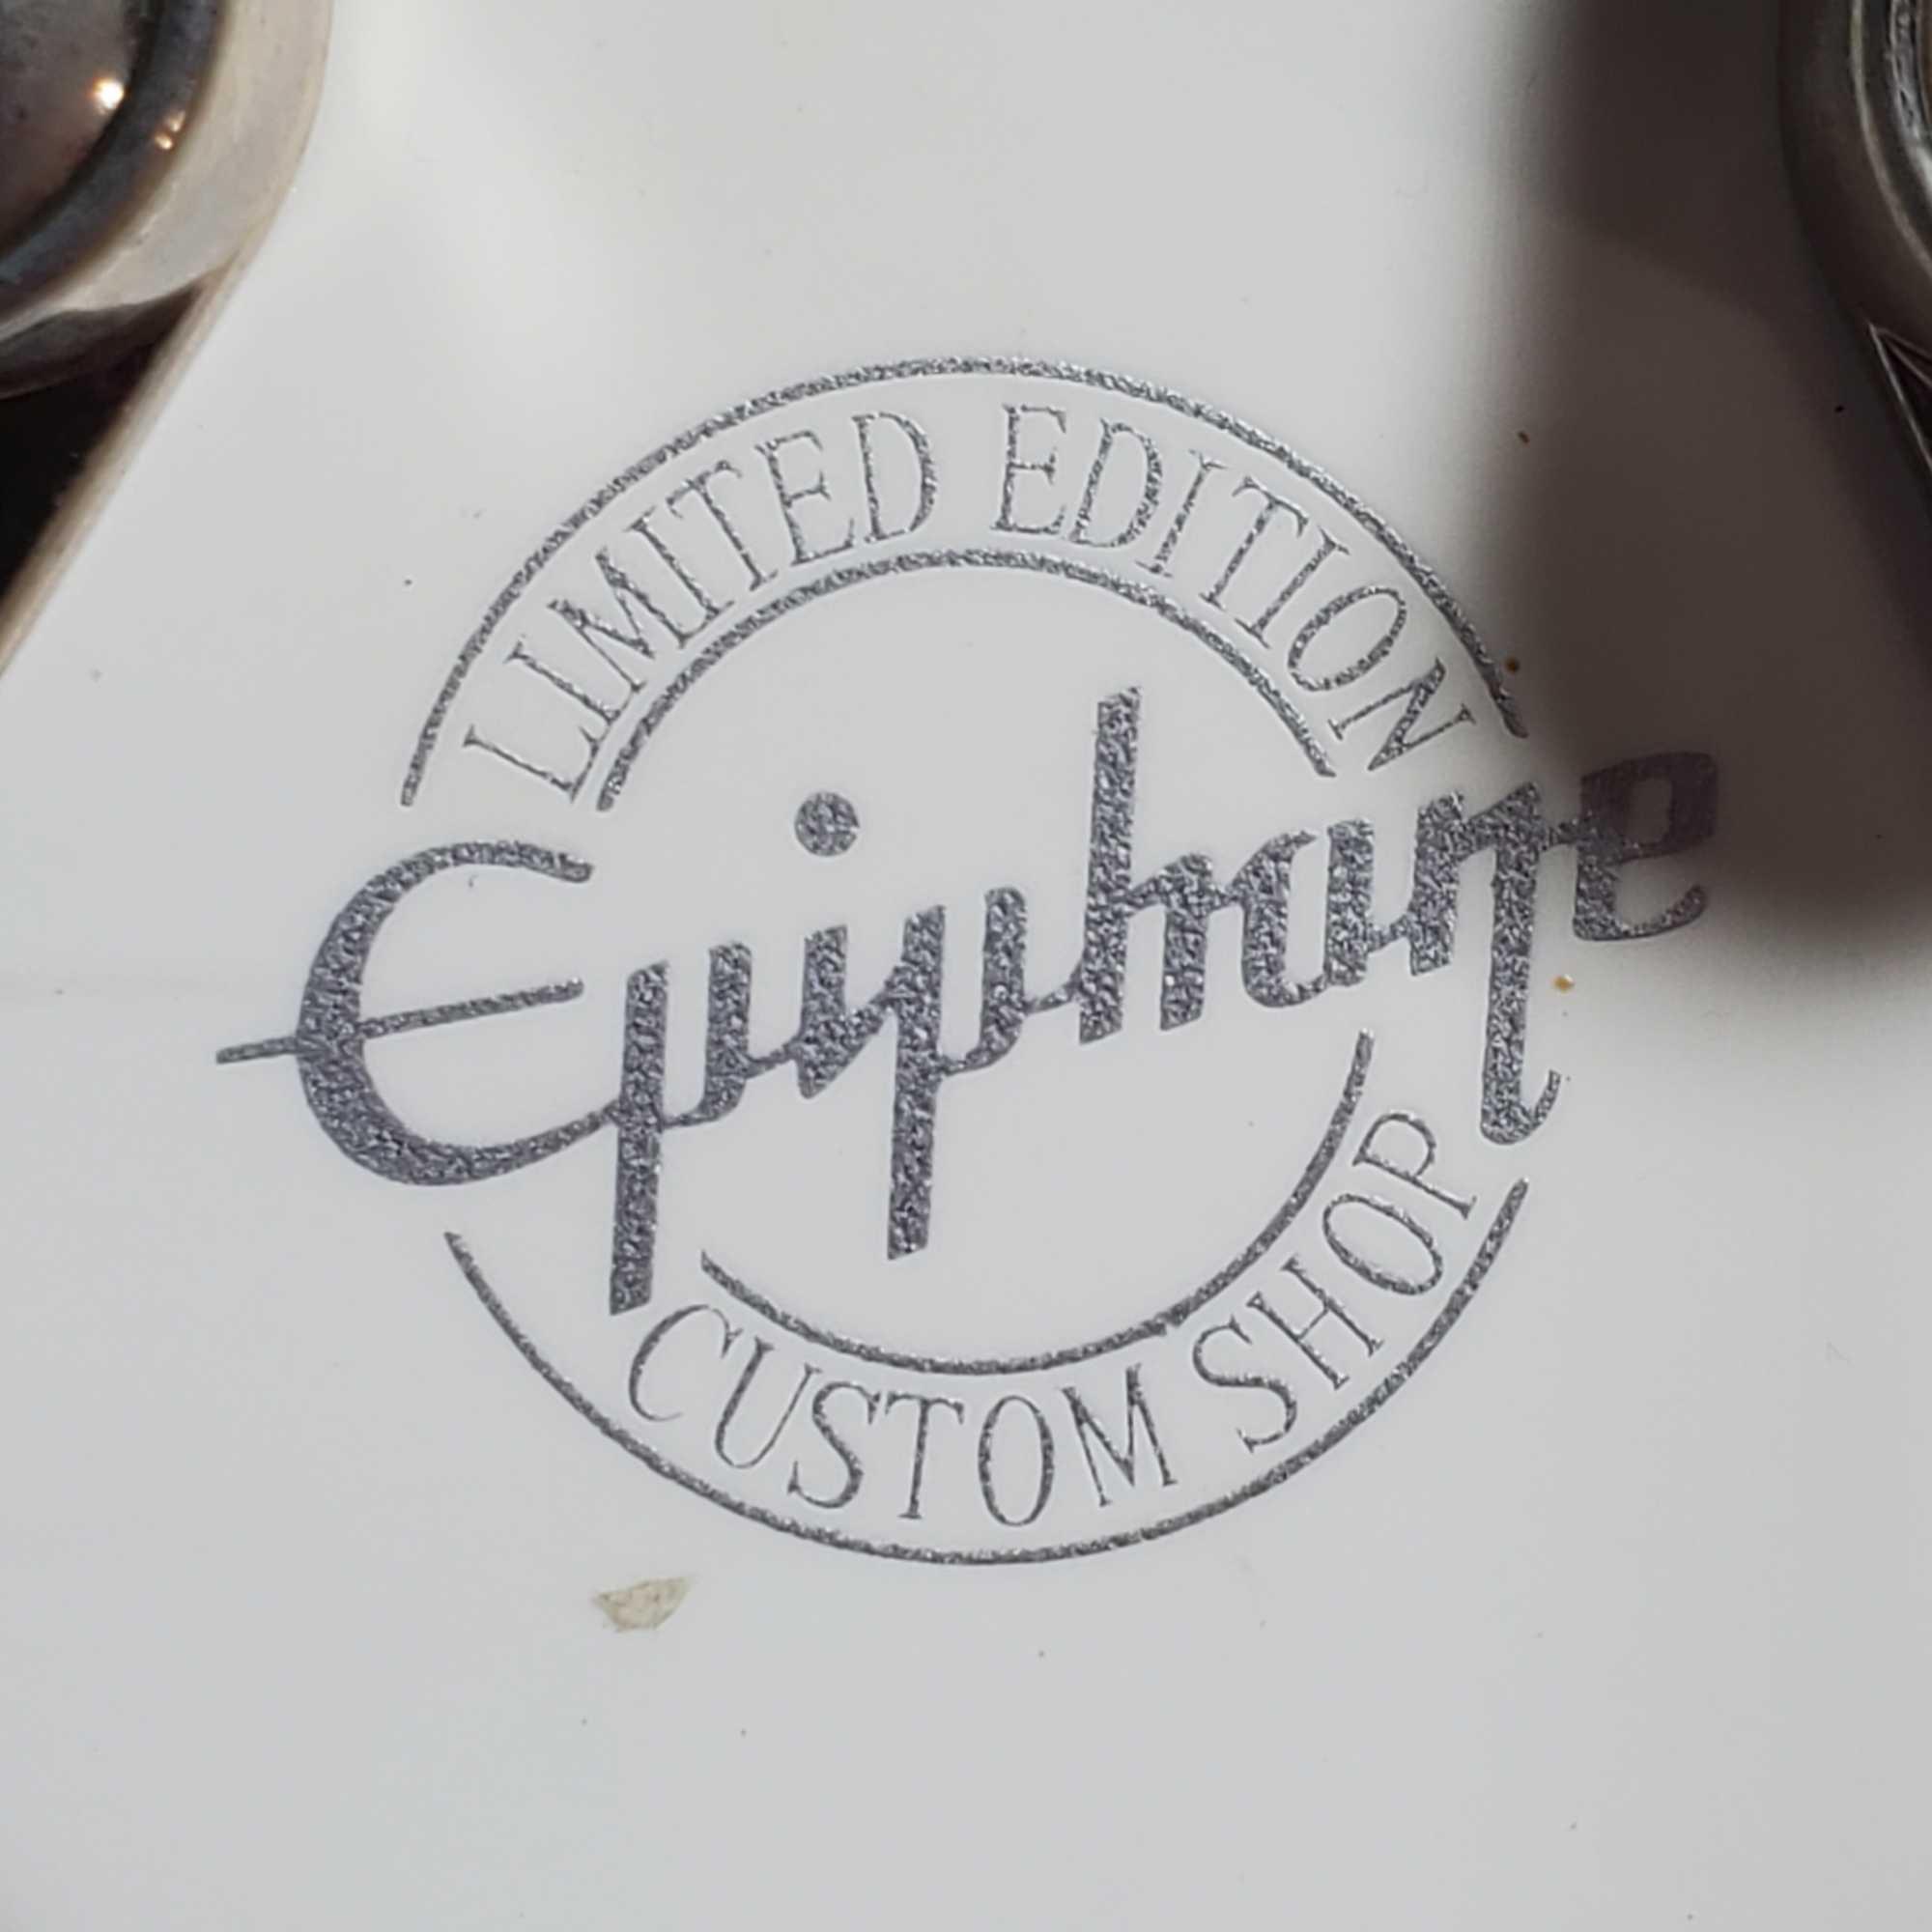 Epiphone Les Paul Model Studio Hard Body Alpine White, Fender Mustang LT25 Amp. & Stand